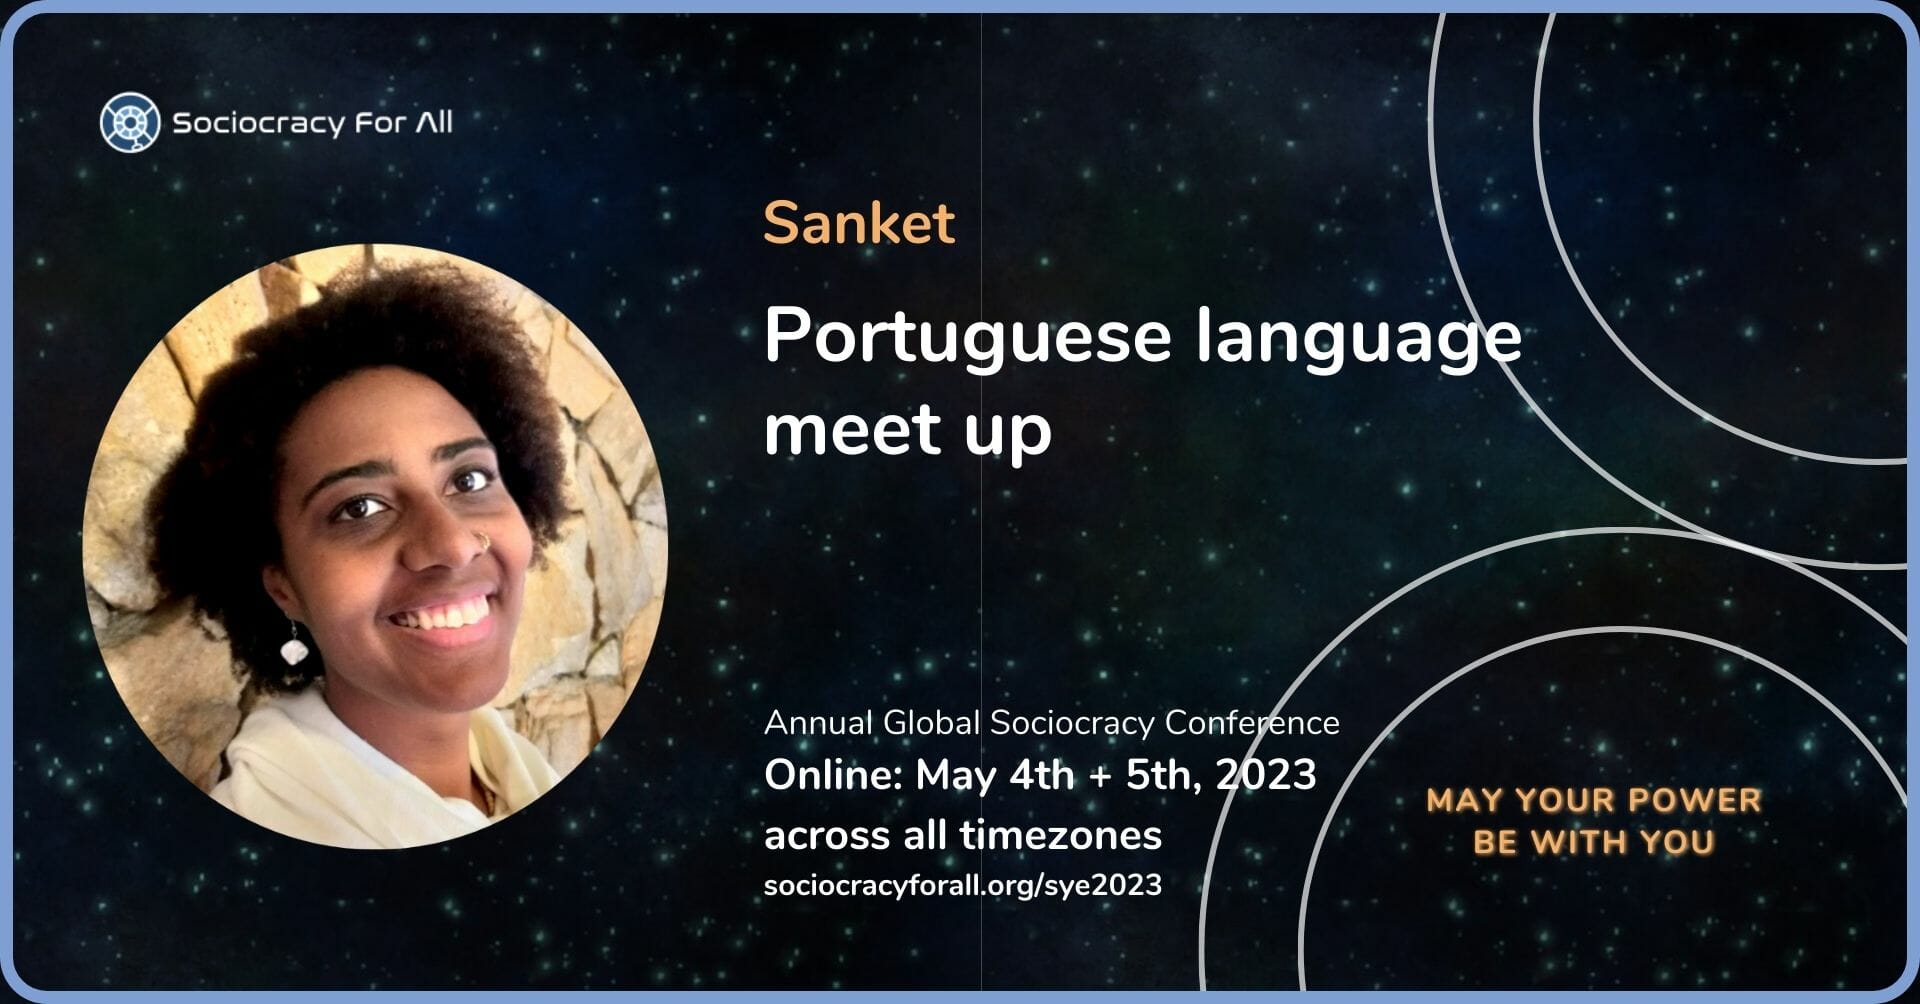 Portuguese language meet up